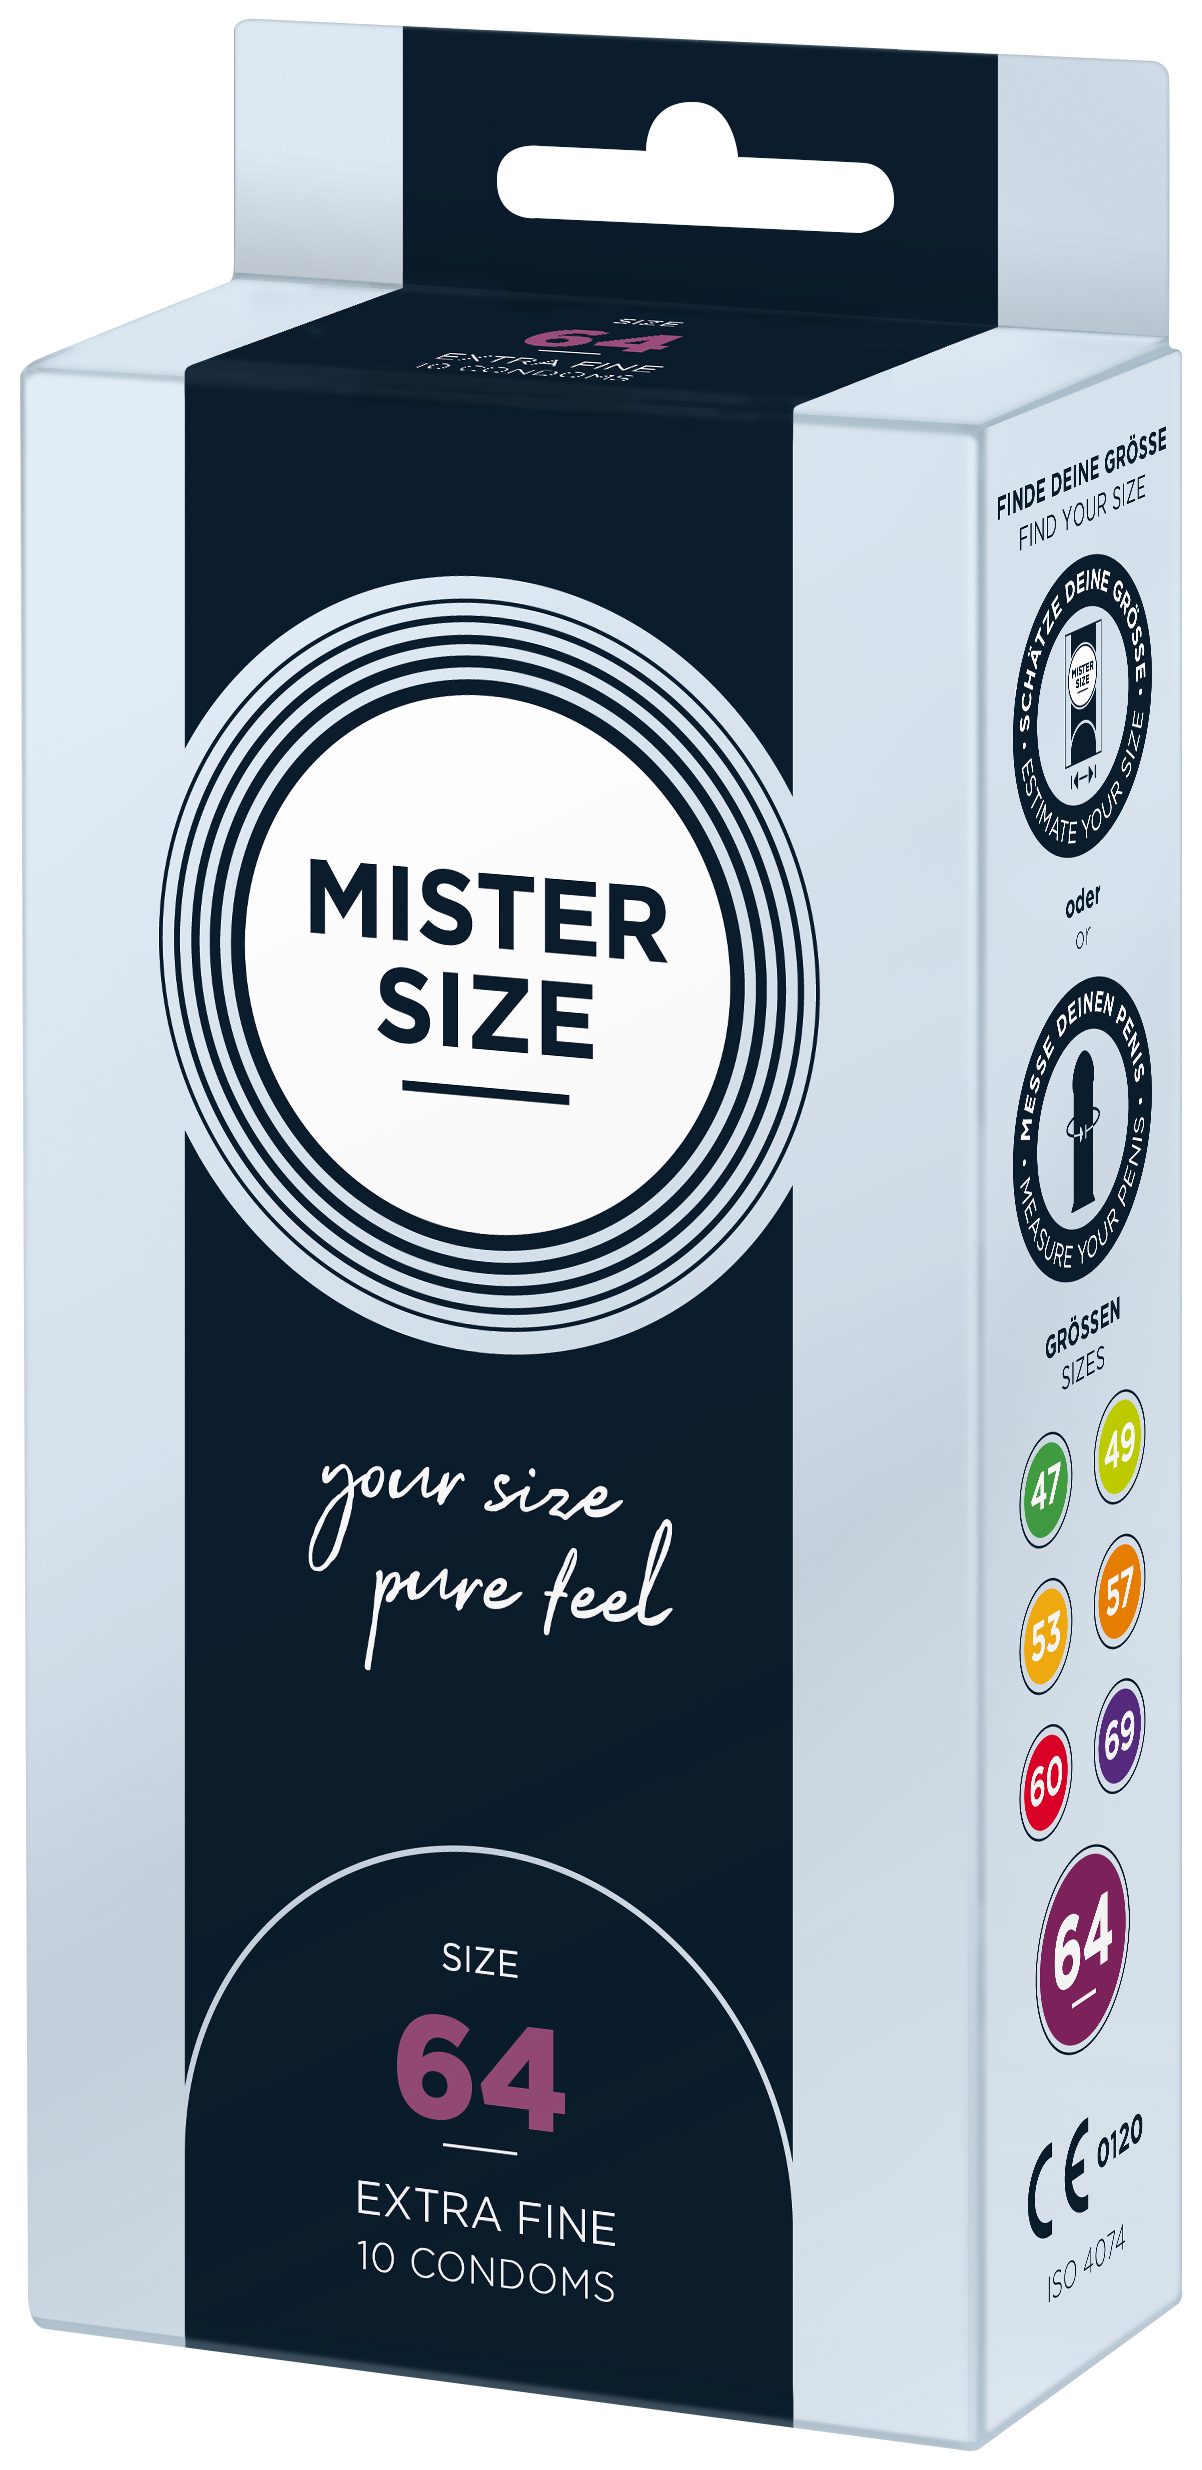 MISTER SIZE Kondome feucht gefühlsecht Nominale Breite 64mm, & Stück, 10